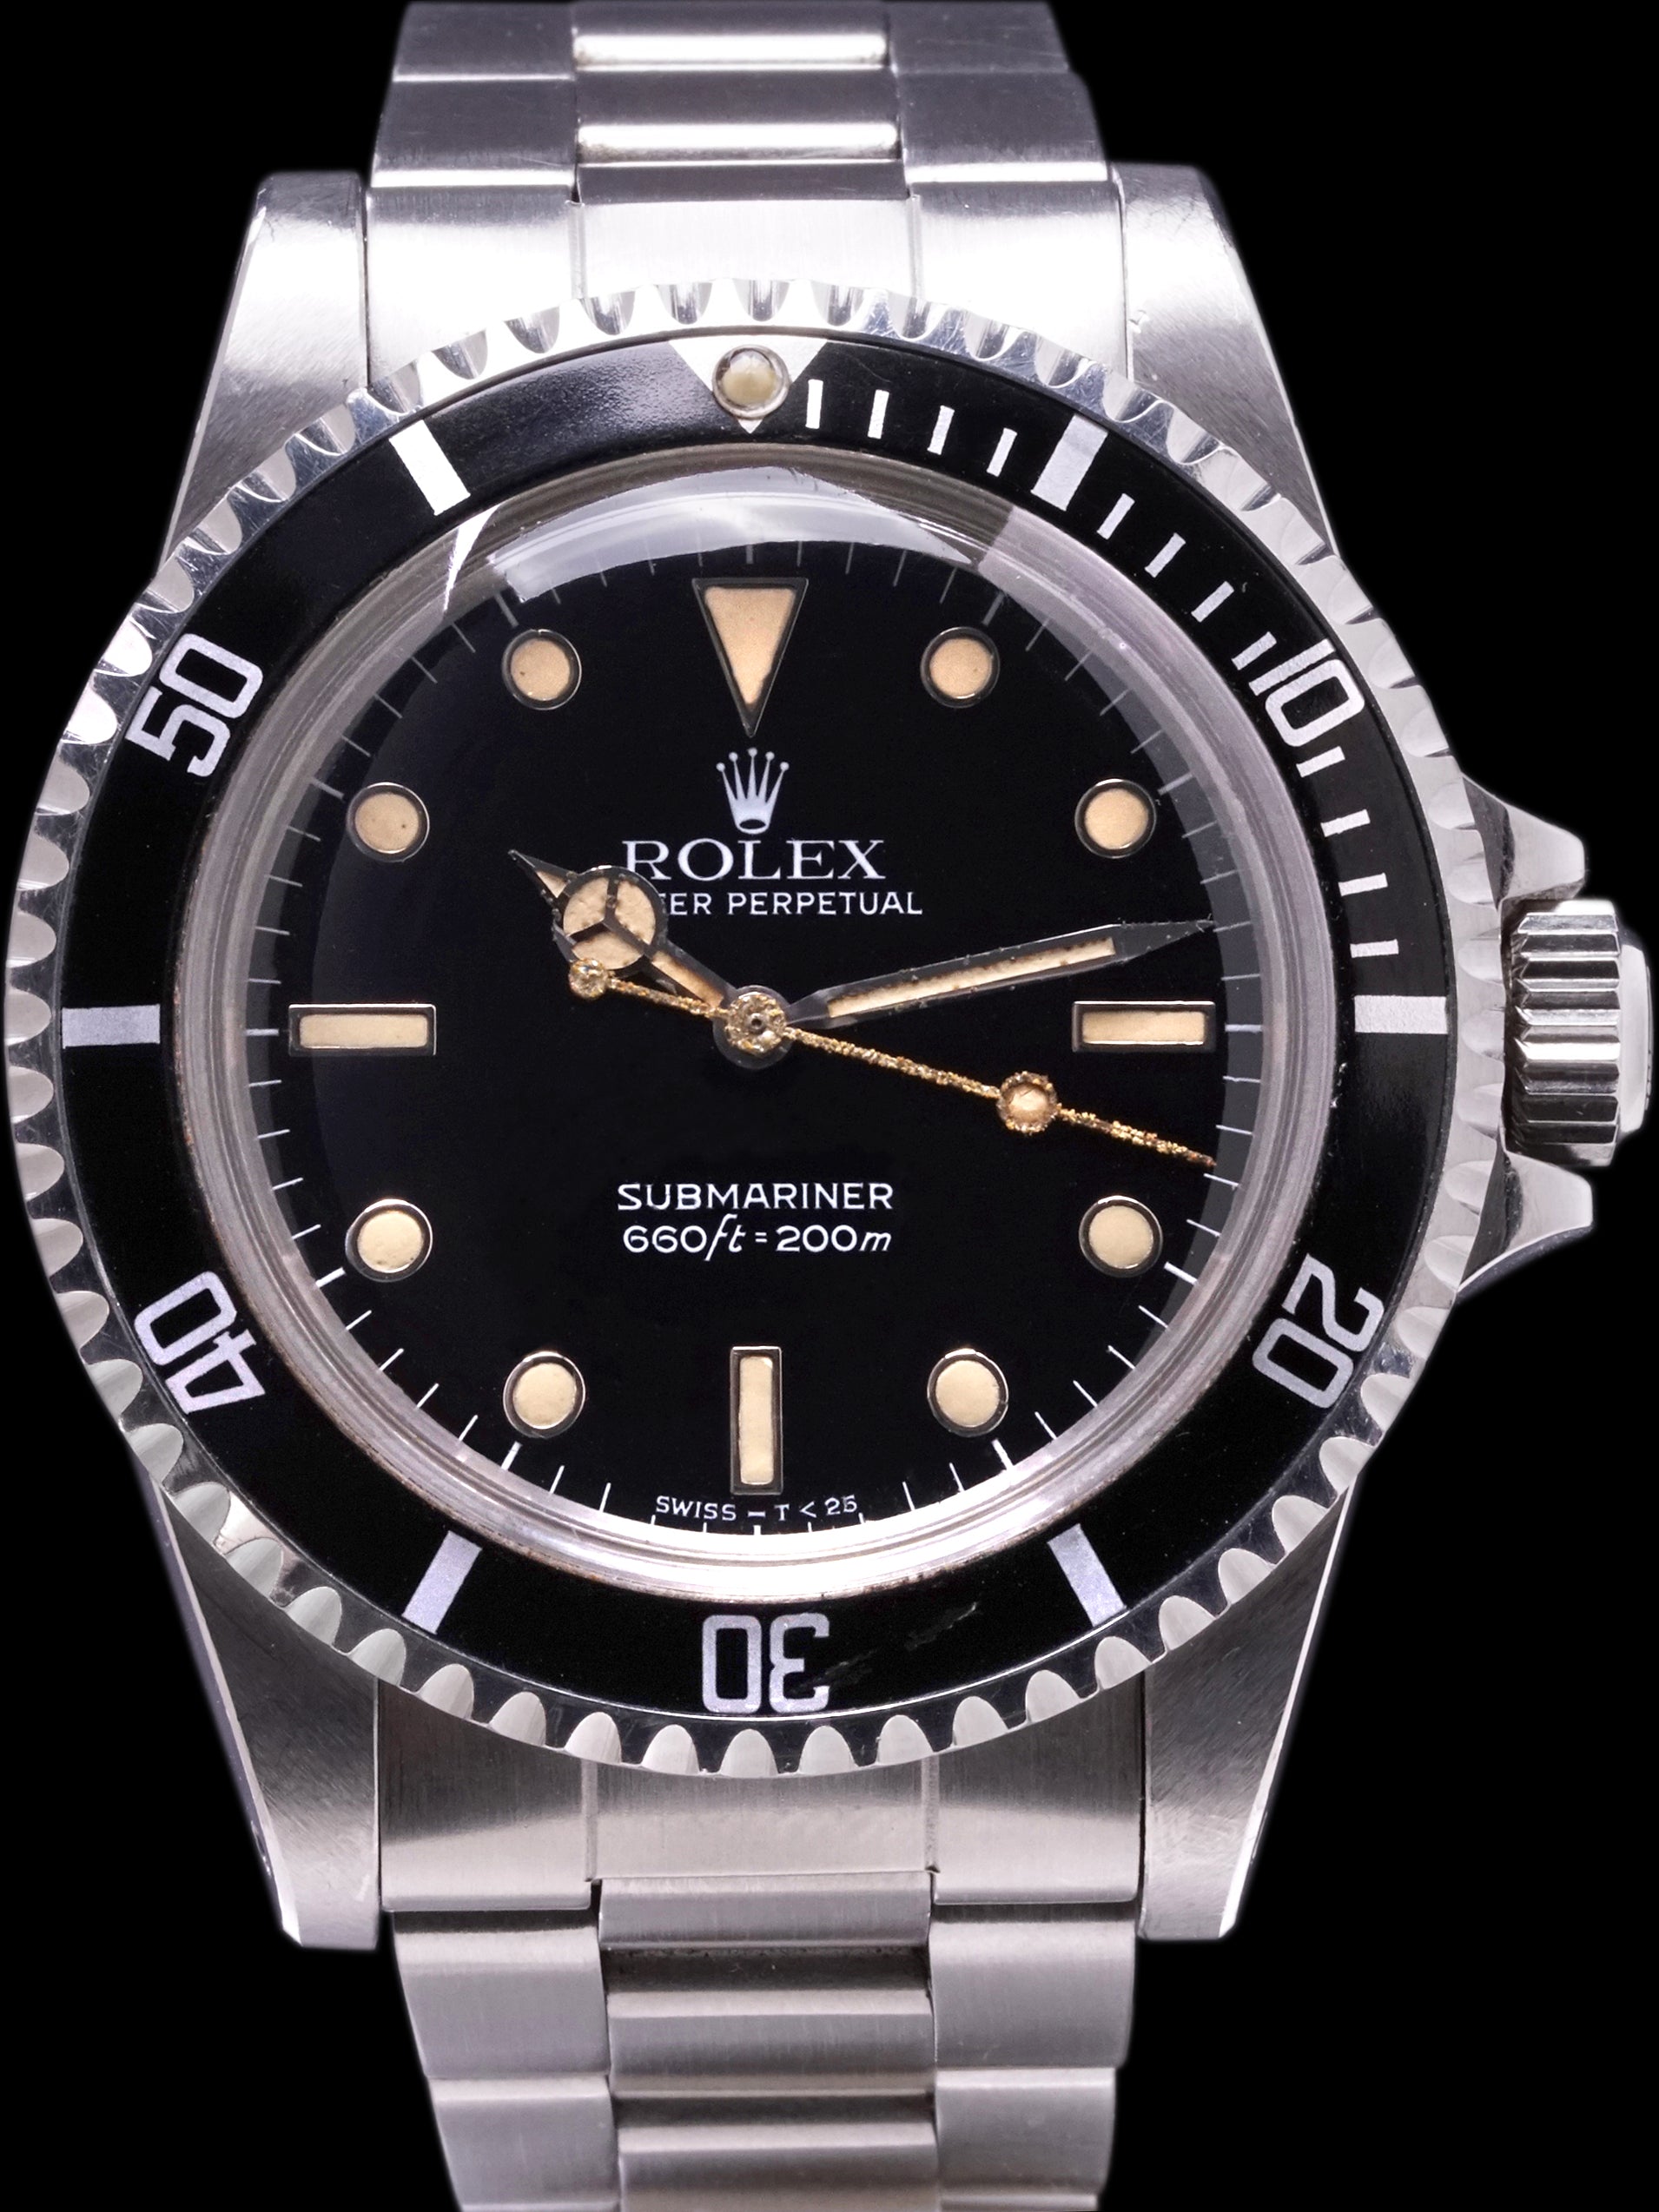 *Unpolished* 1984 Rolex Submariner (Ref. 5513)